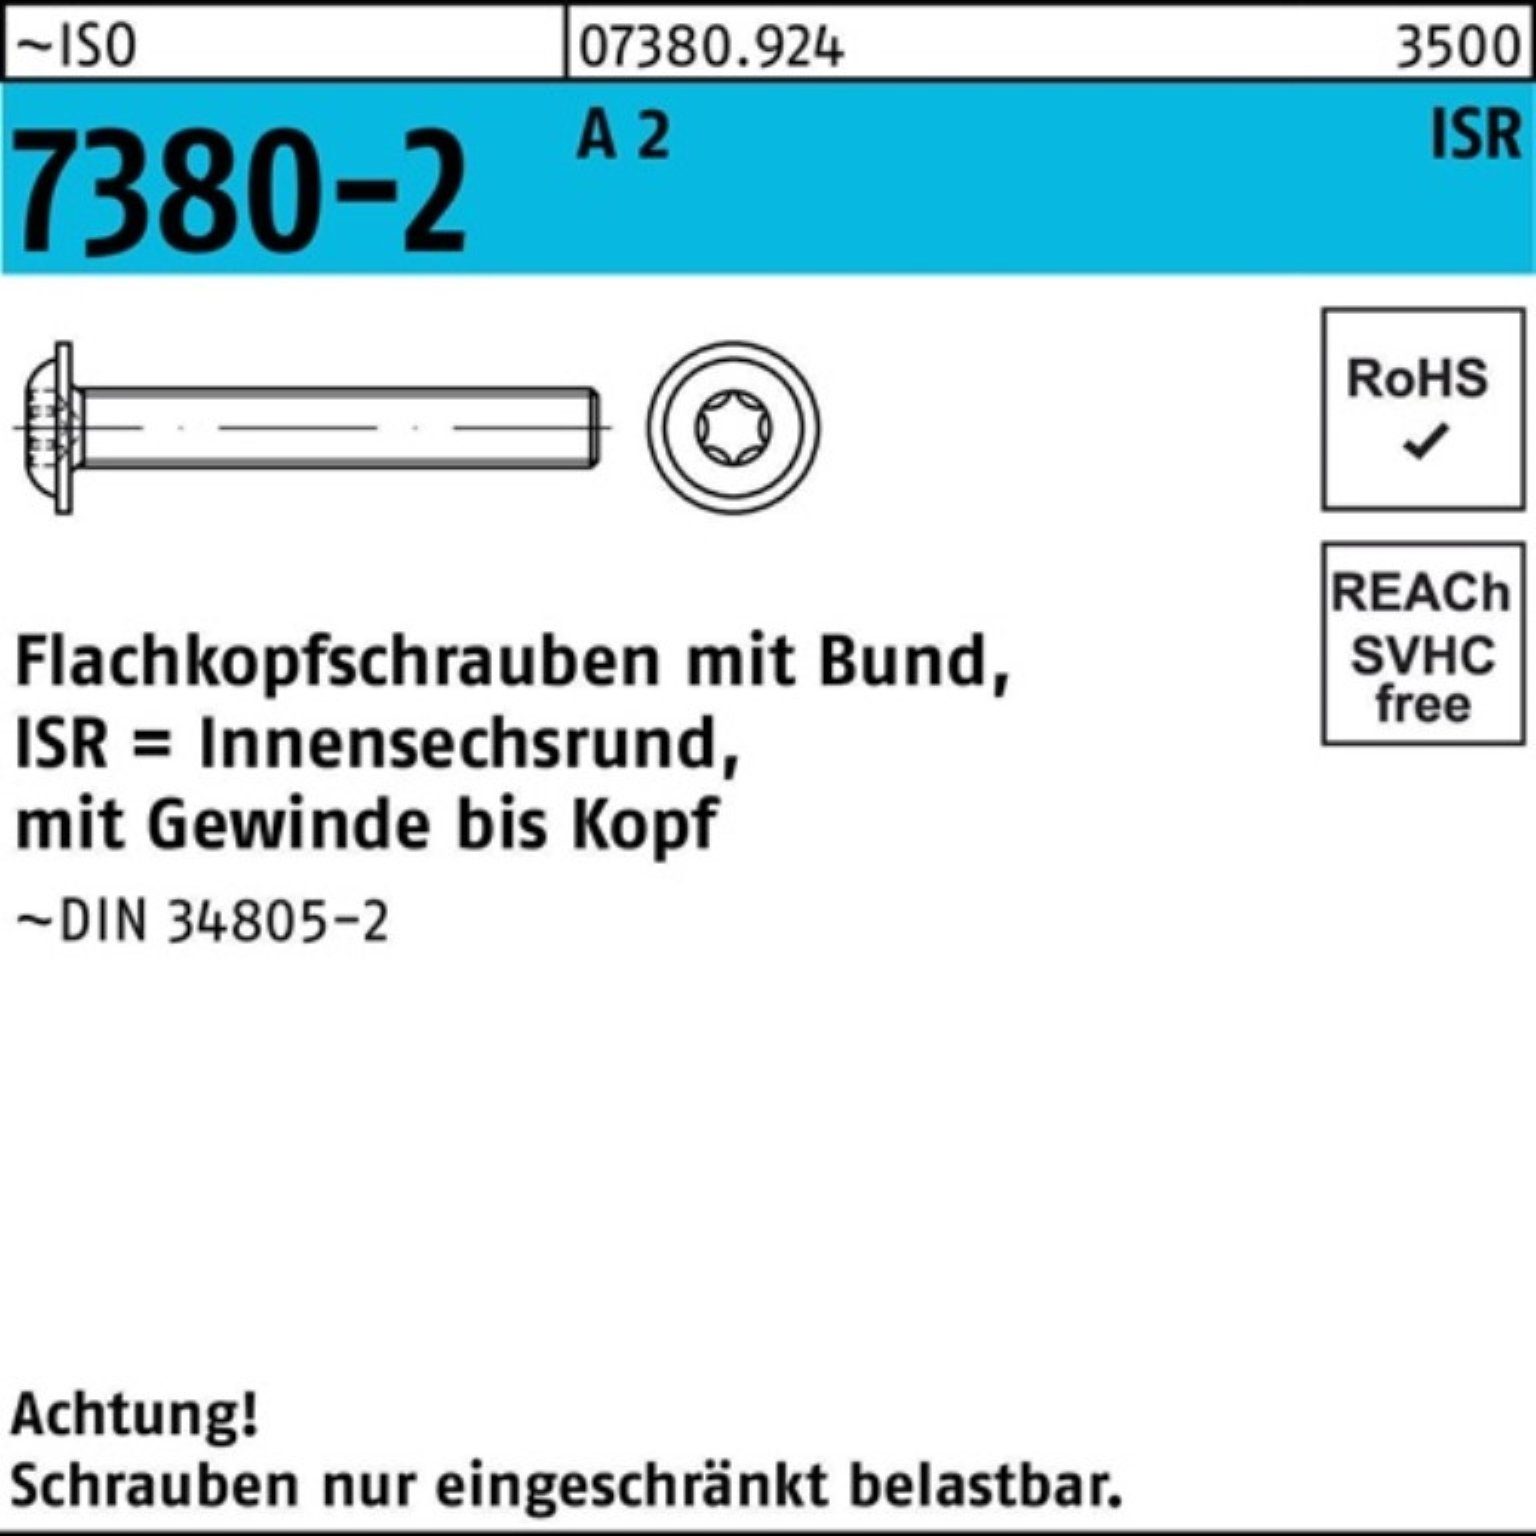 Beliebte Artikel! Reyher Schraube 500er 40-T10 Pack 500 M3x A Flachkopfschraube 2 Bund/ISR 7380-2 ISO VG